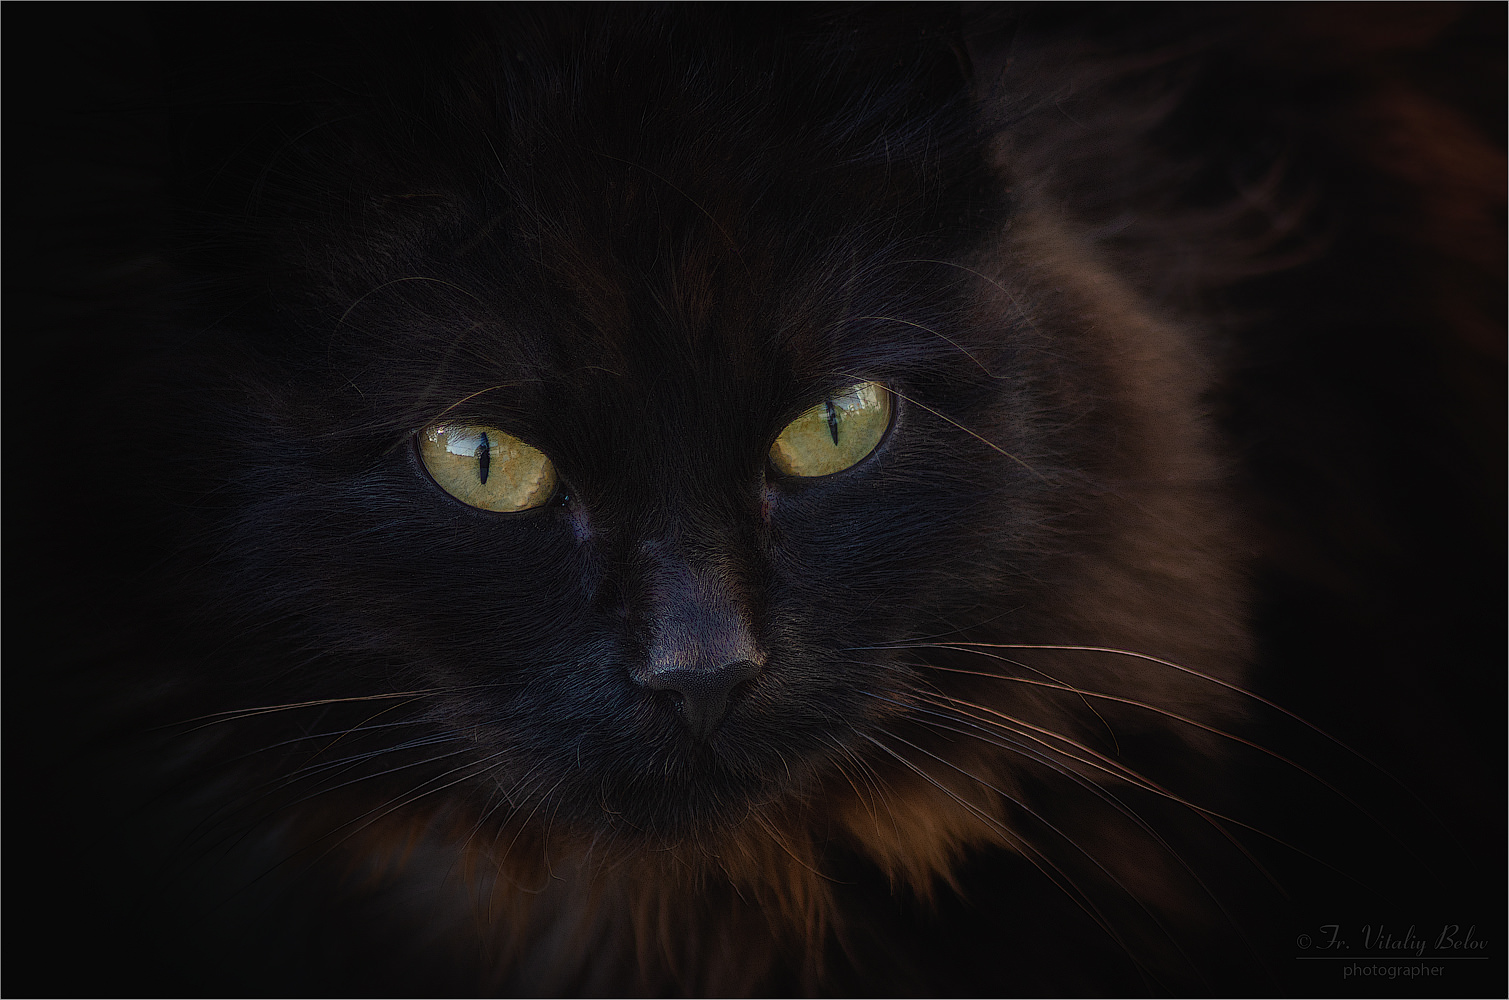 Портрет черного кота